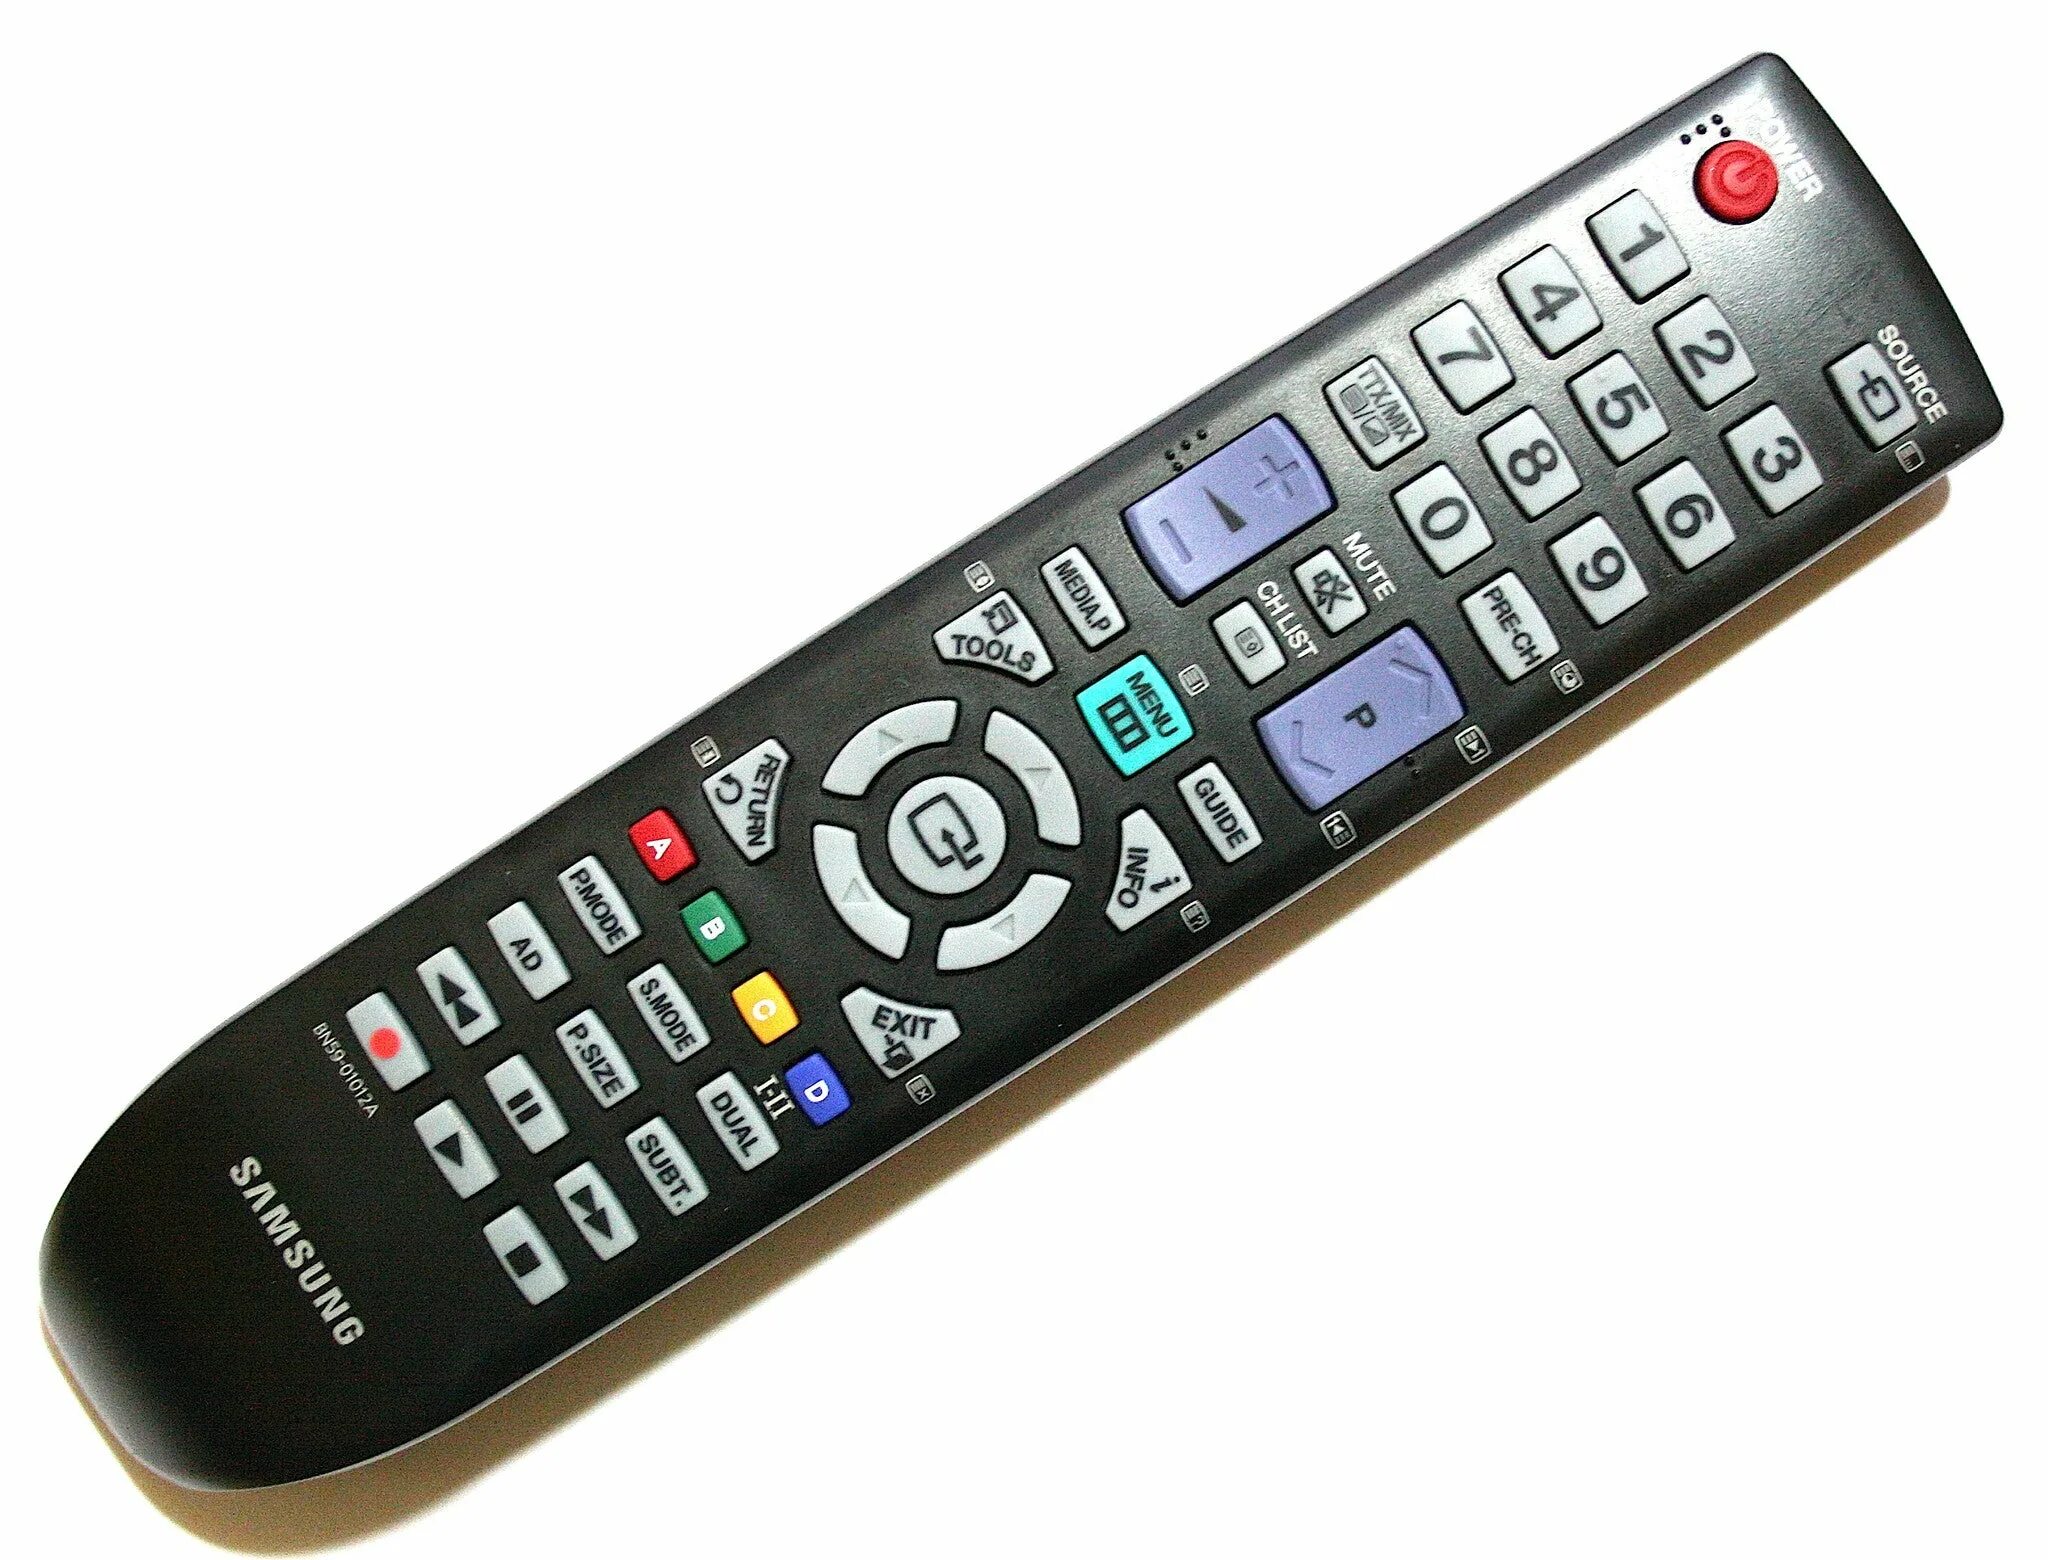 Включи интернет пульт. Bn59-01012a пульт. Samsung bn59-01012a. Пульт для телевизора Samsung bn59-01012a. Пульт Ду для телевизора самсунг 32.